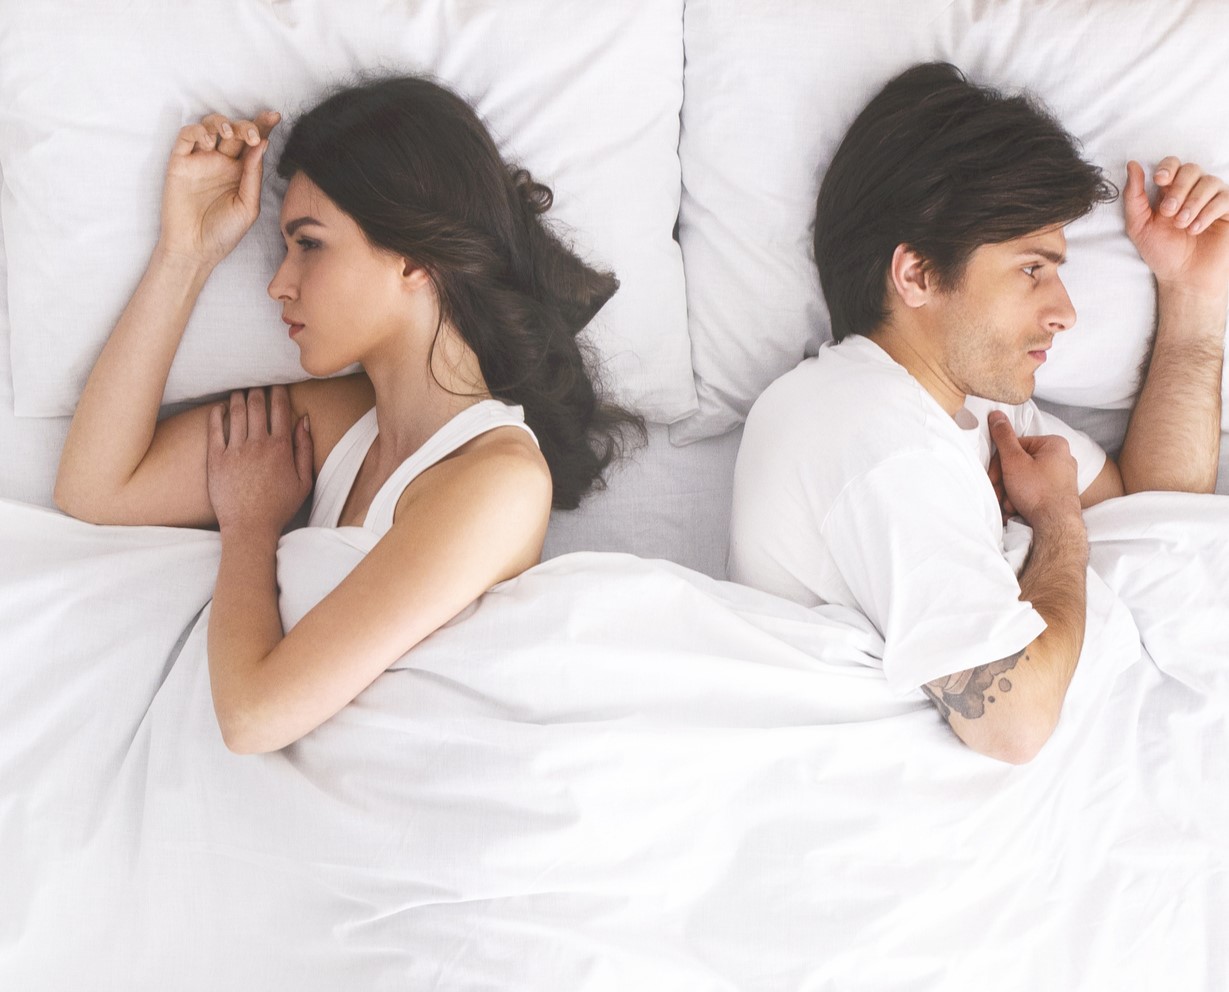 Μπορεί το «διαζύγιο ύπνου» να σώσει τη σχέση σου;